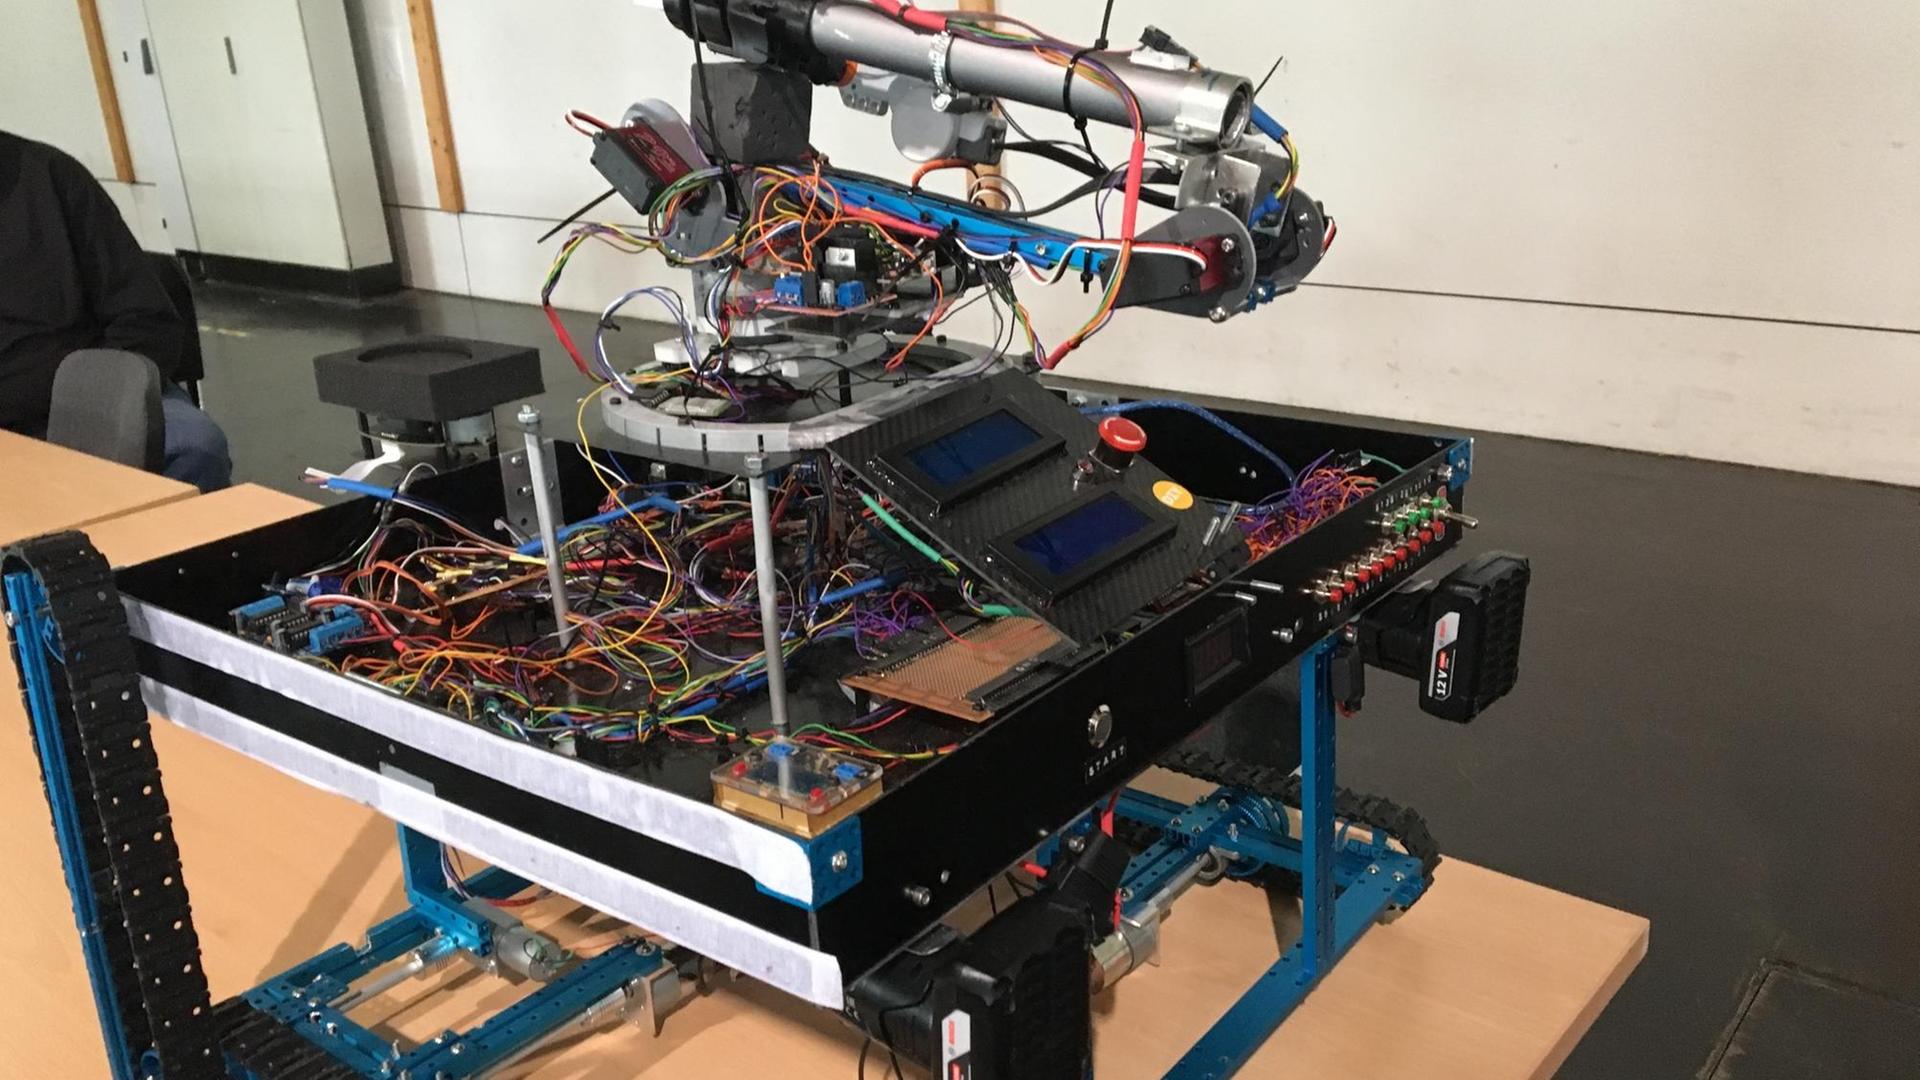 Der Roboter "Loch Ness" besteht aus einem Metallrahmen mit zahlreichen Kabeln und Computer-Chips.